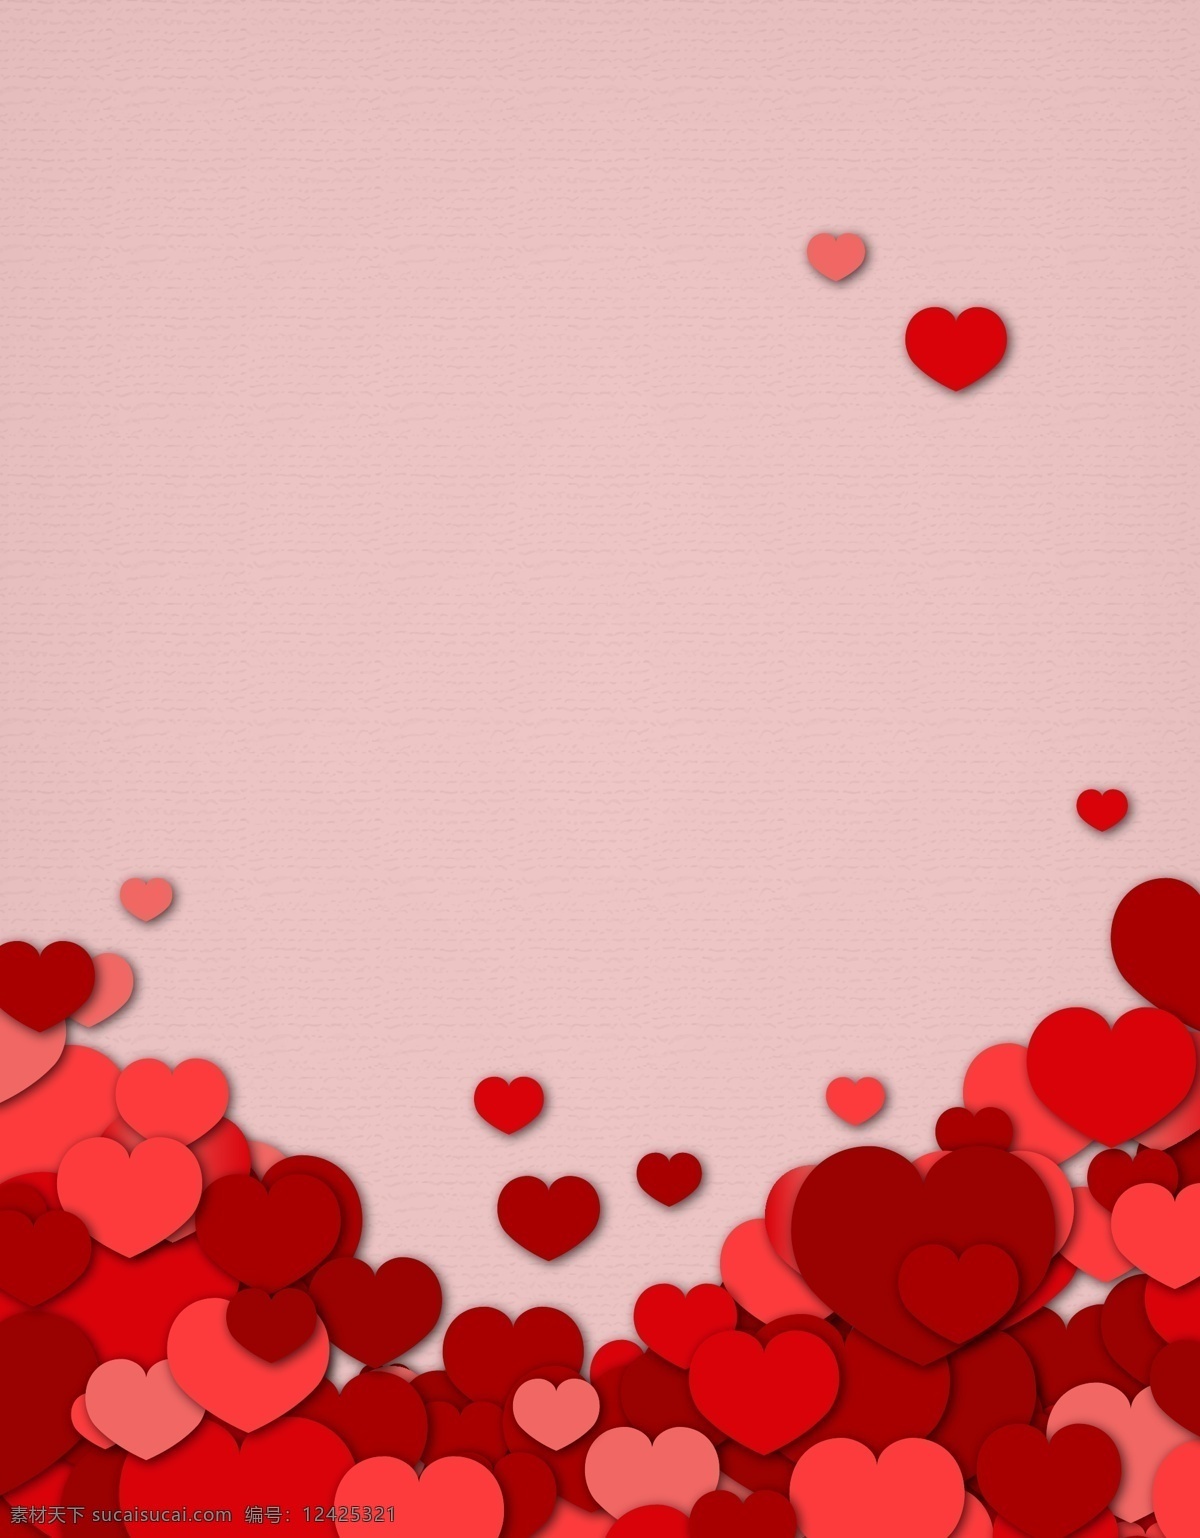 矢量 立体 心形 层叠 花边 背景 红色 婚庆 情人节 海报